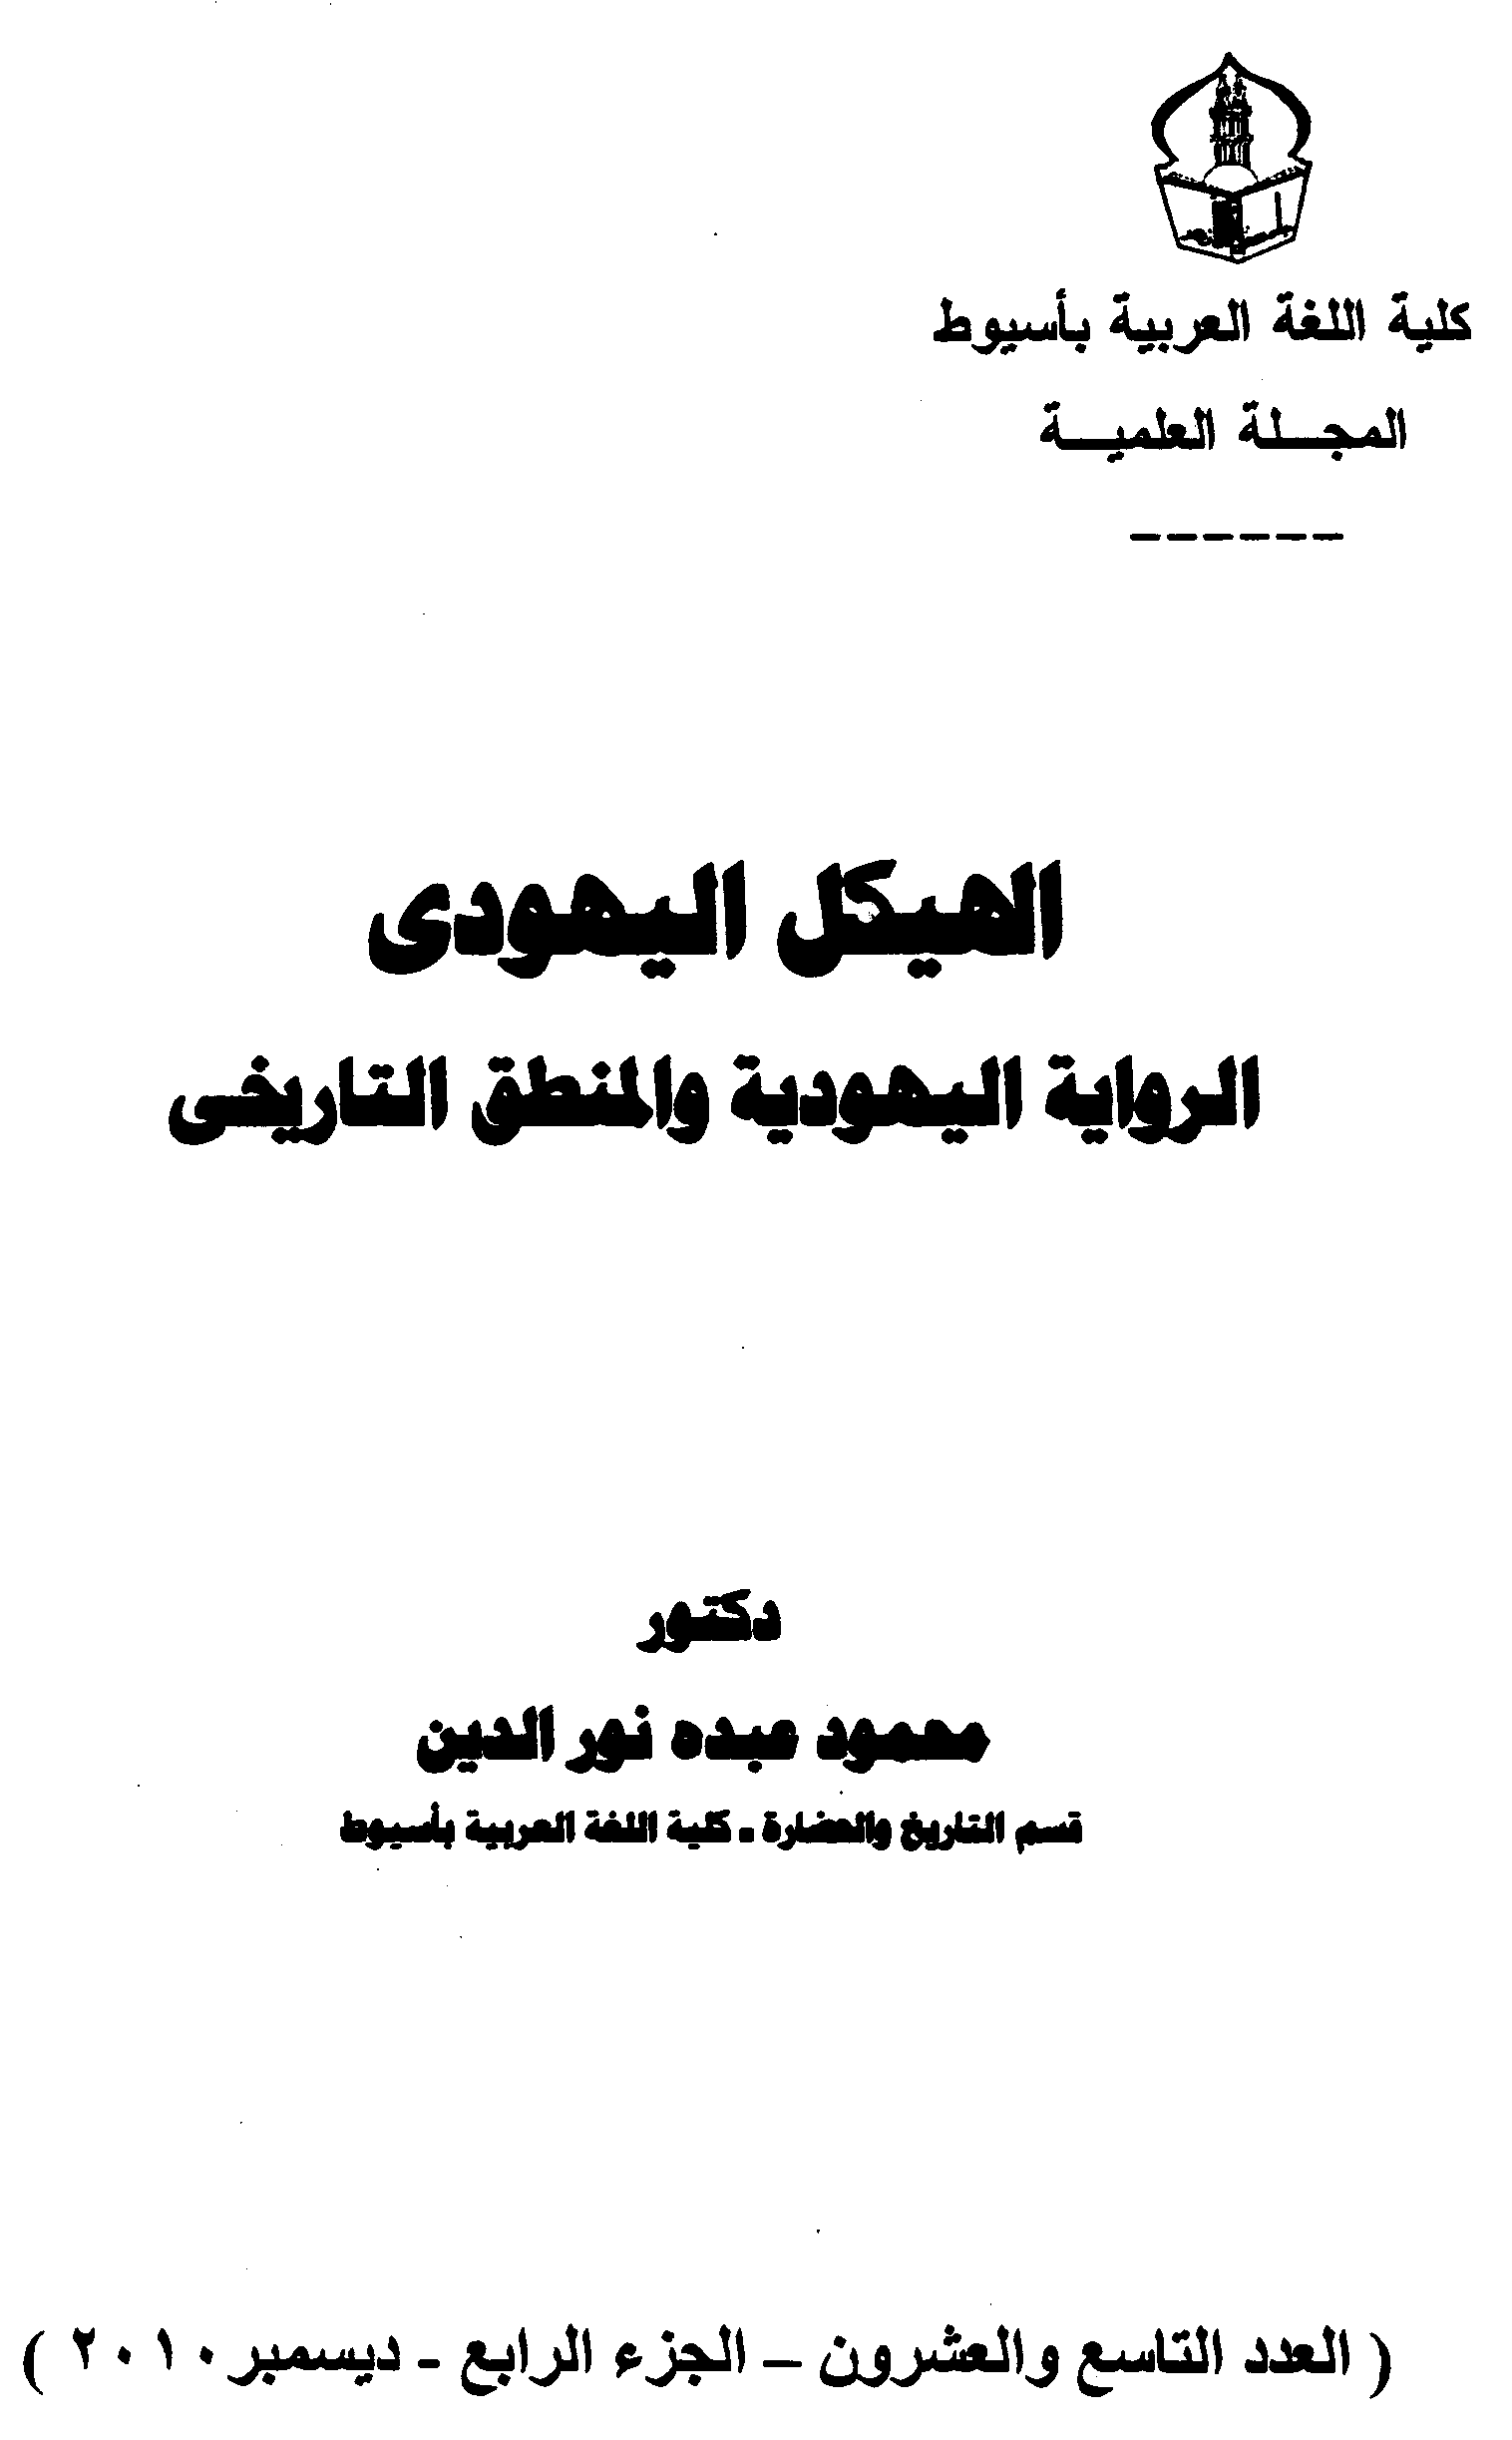 غلاف دراسة عن الهيكل اليهودي الذي نشرته مجلة كلية اللغة العربية بجامعة الأزهر